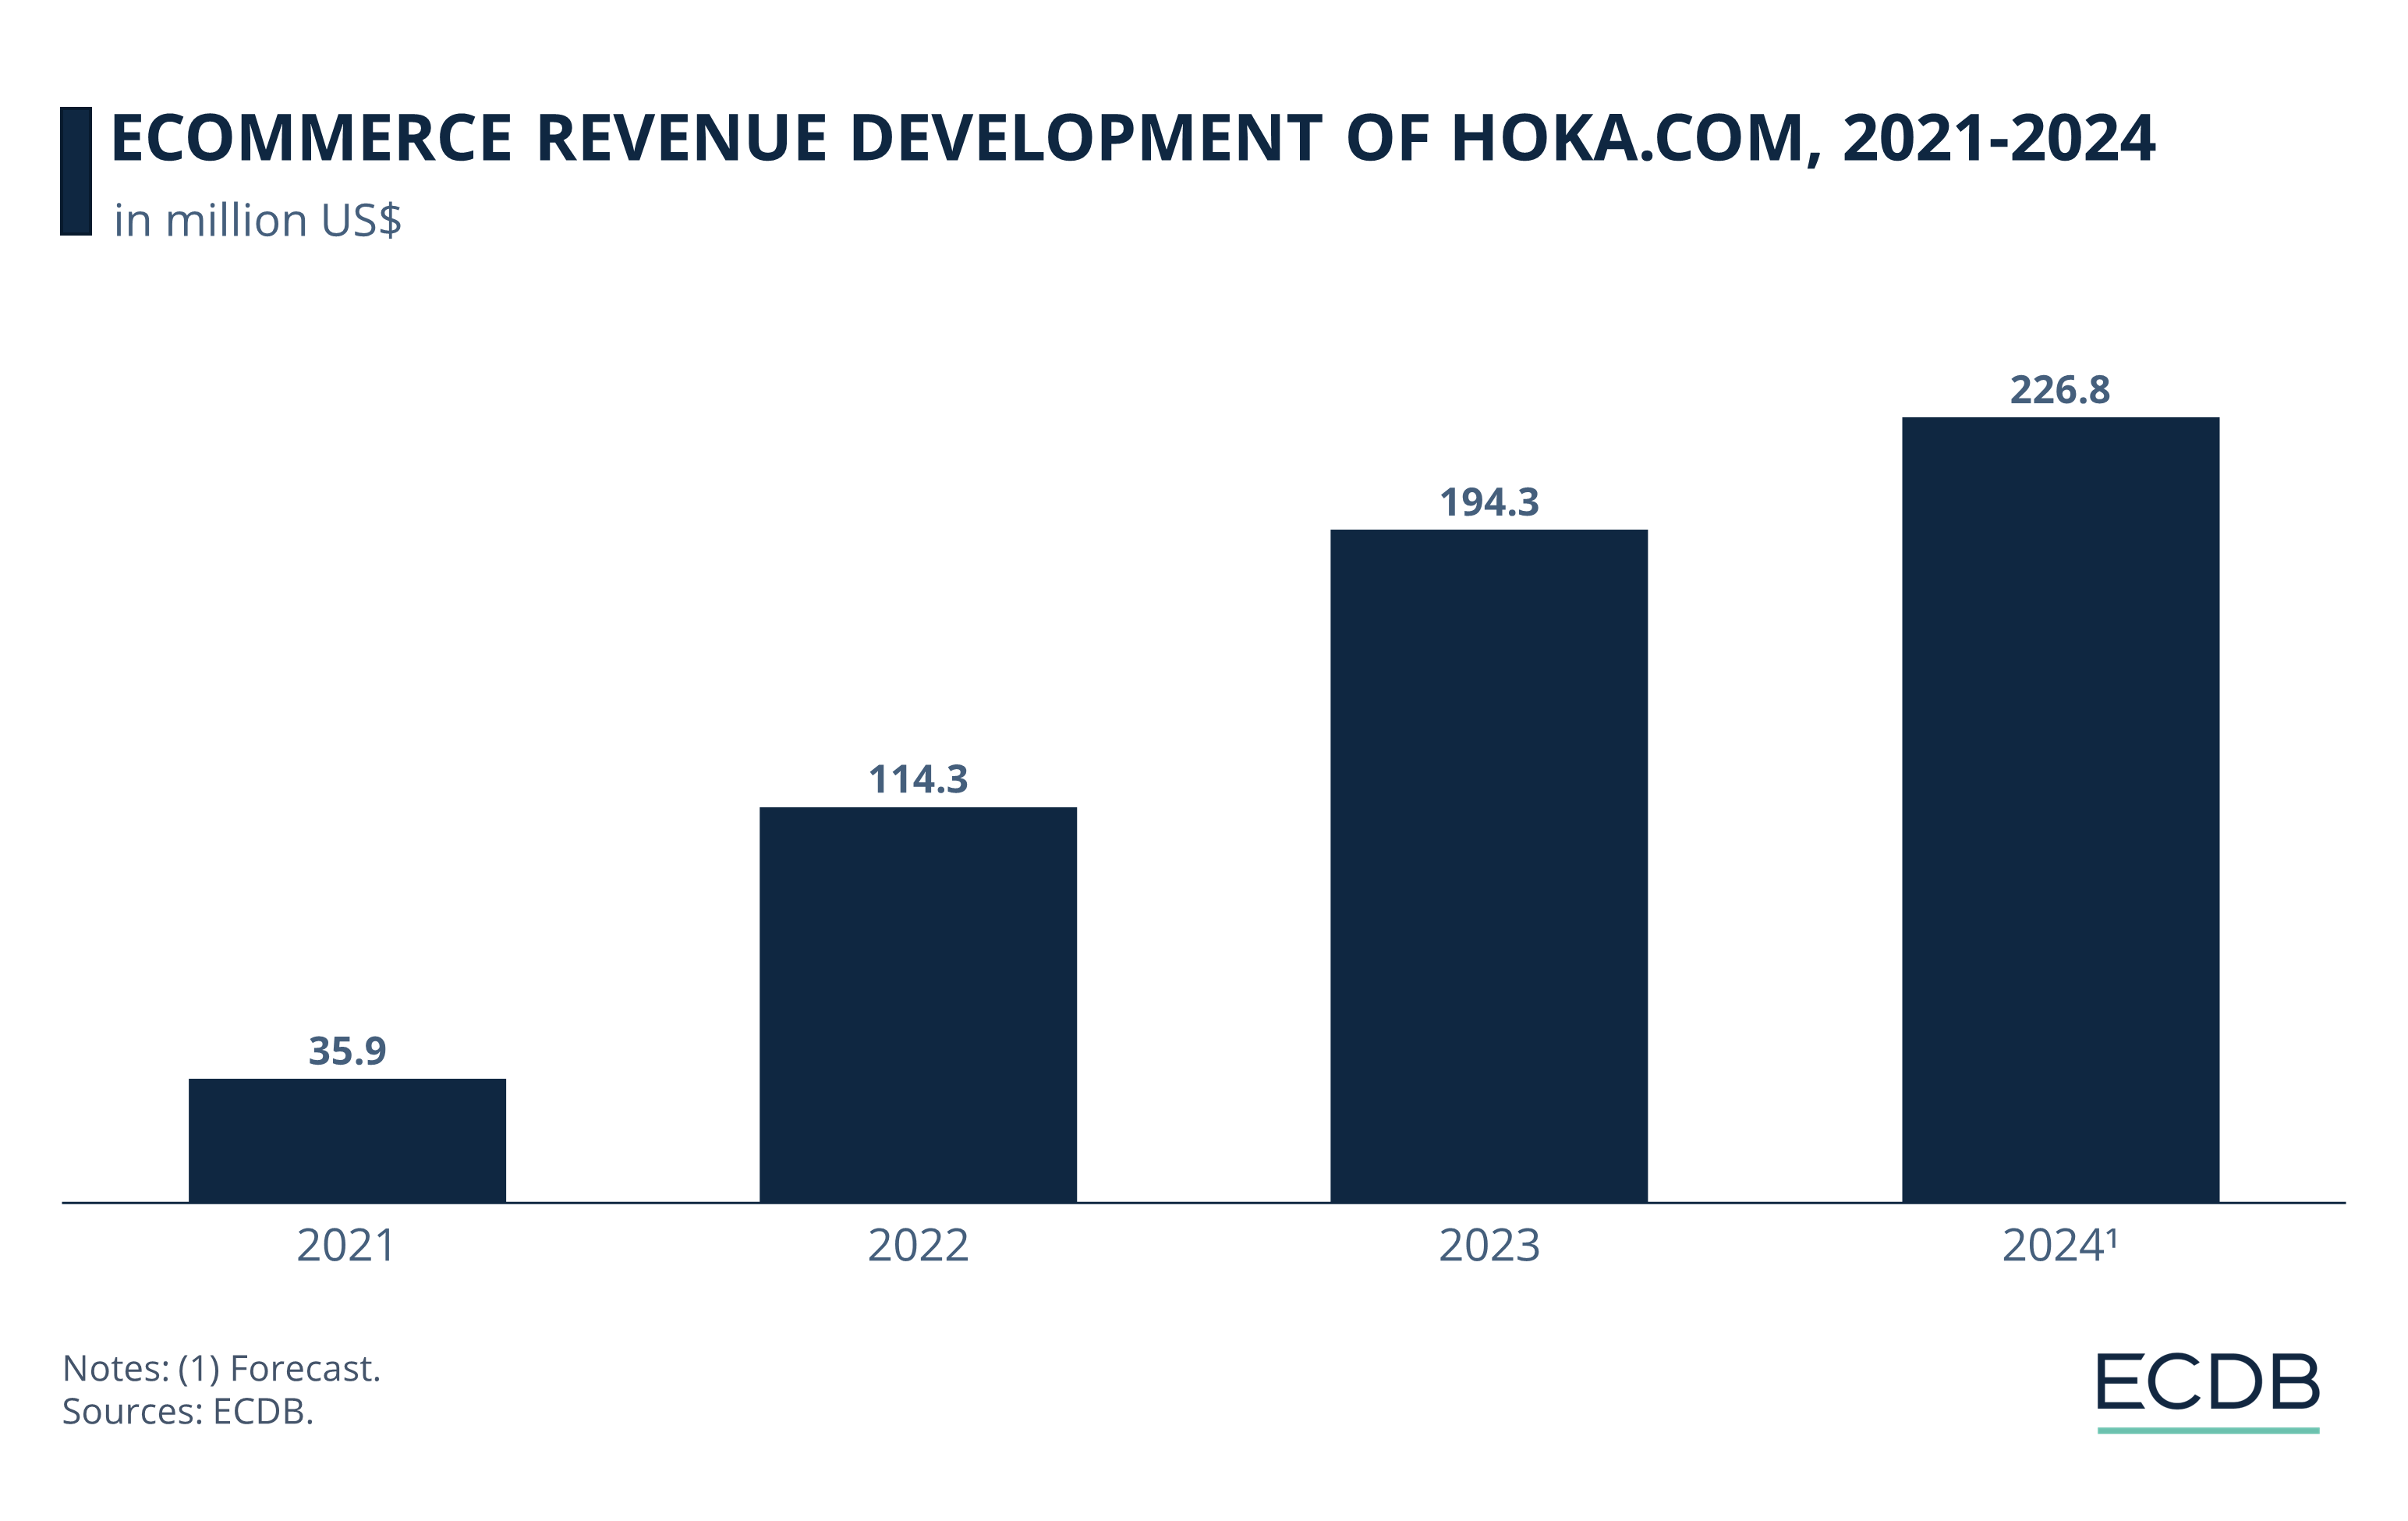 eCommerce Revenue Development of Hoka.com, 2021-2024